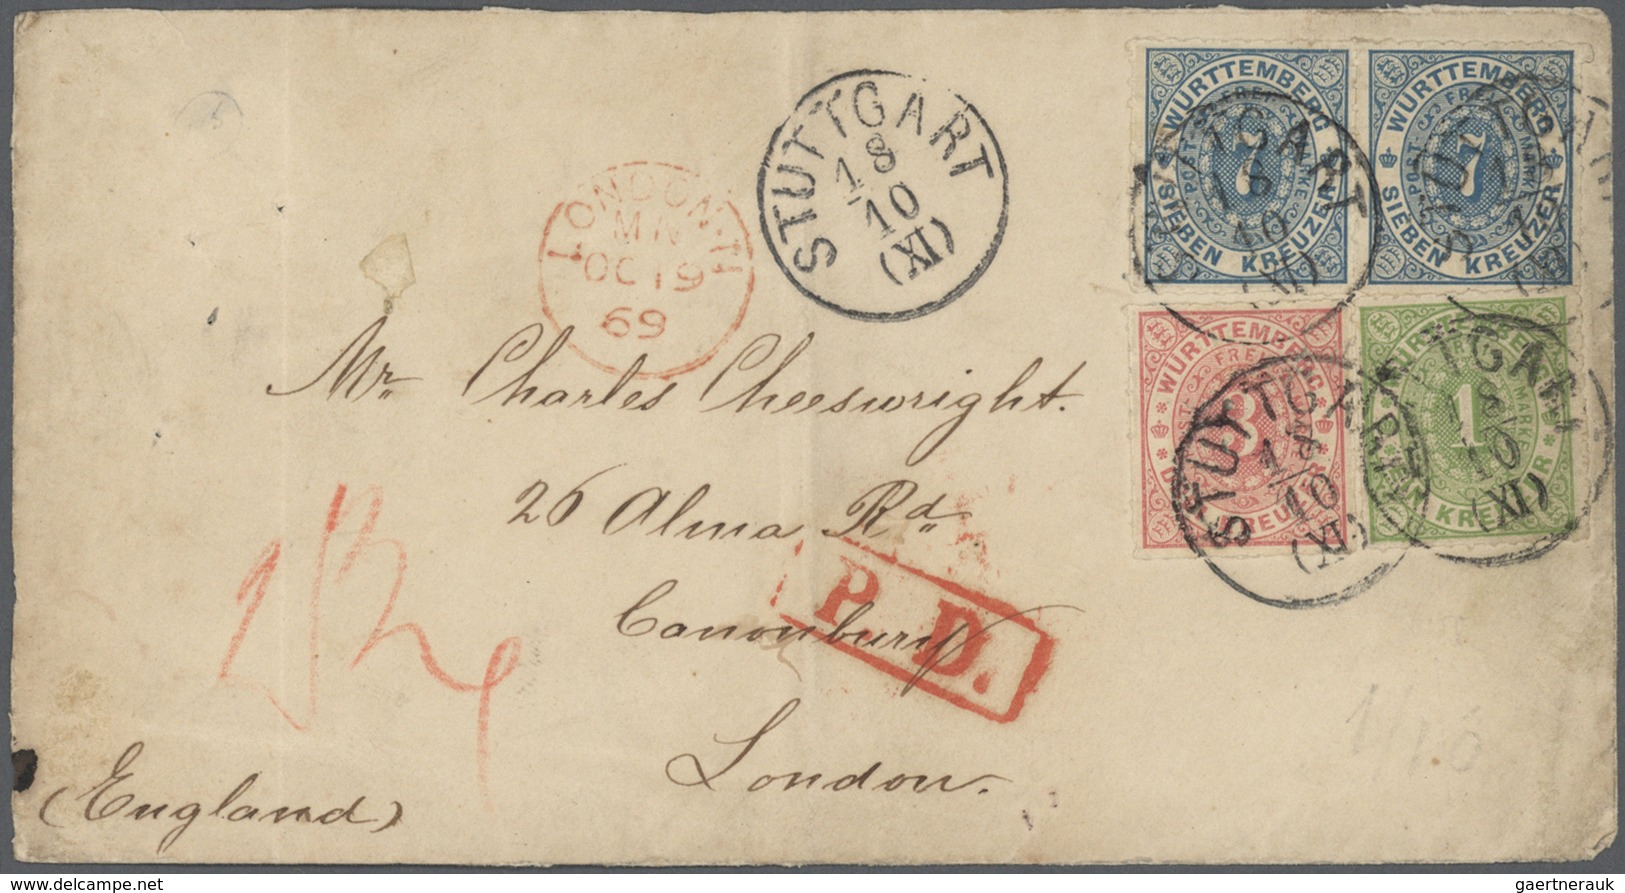 31332 Württemberg - Marken und Briefe: 1850/1874, interessante Sammlung von ca. 400 Belegen der Kreuzerzei